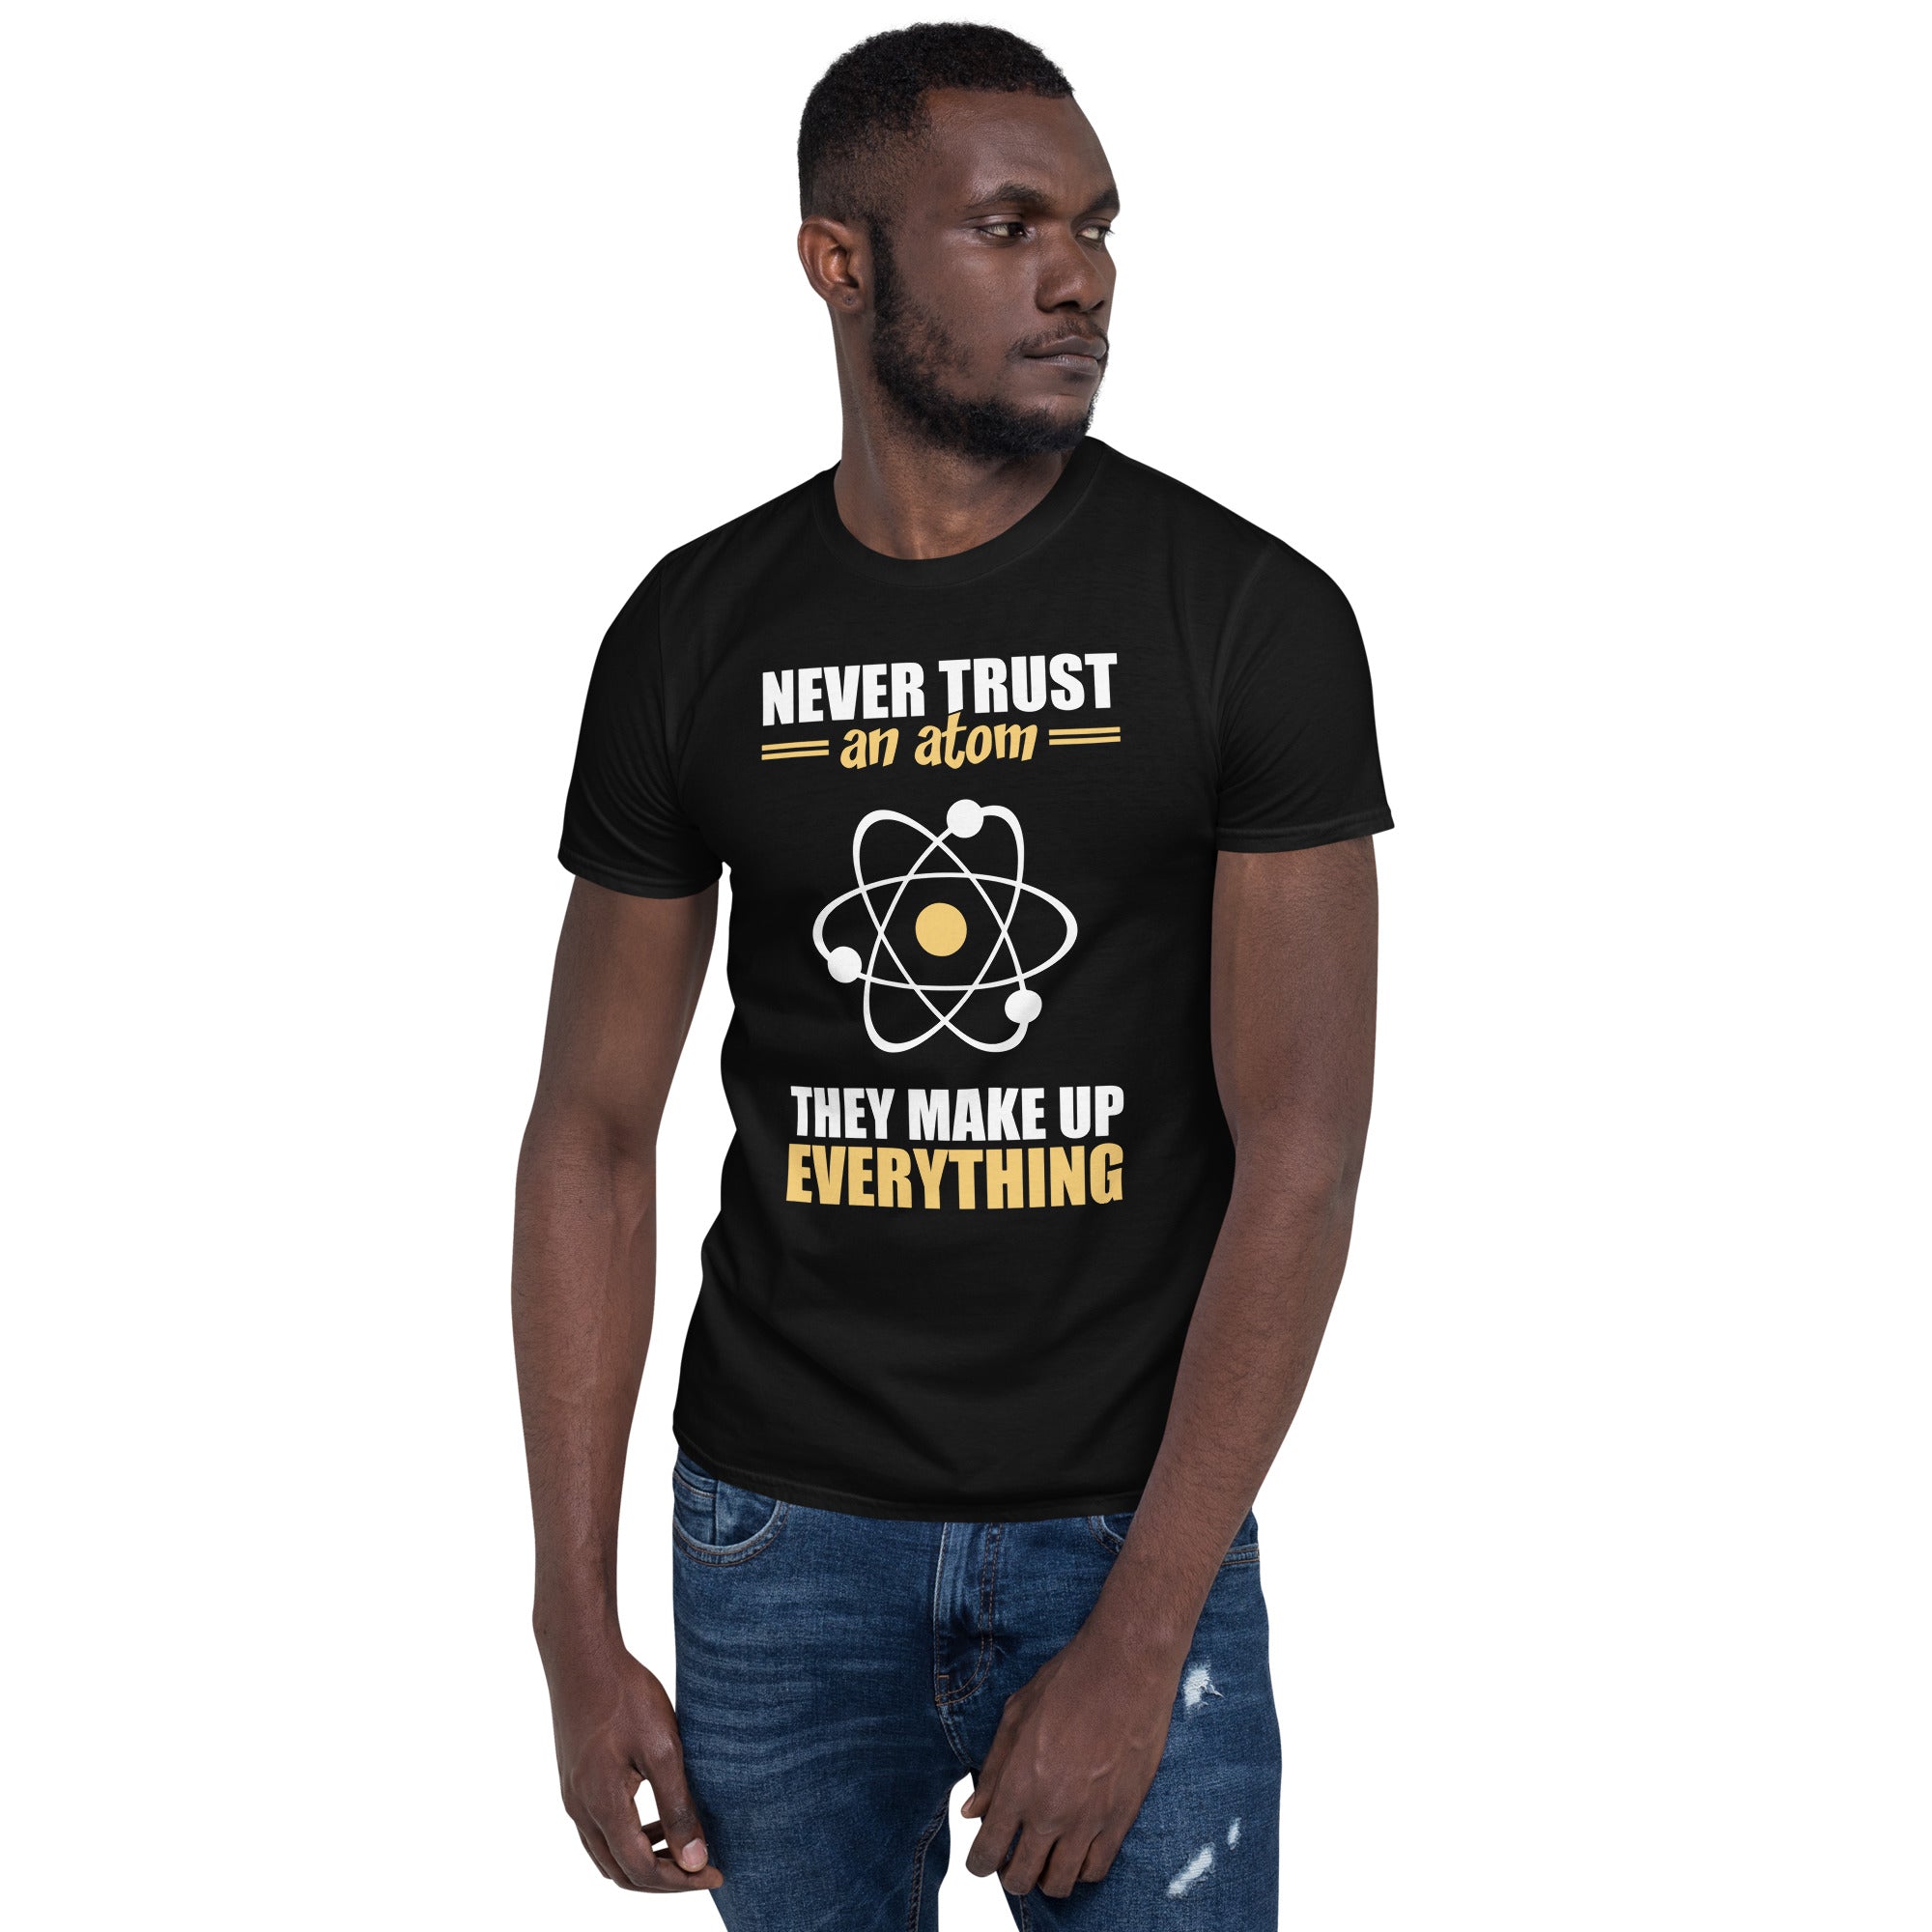 Never Trust An Atom - Short-Sleeve Unisex T-Shirt